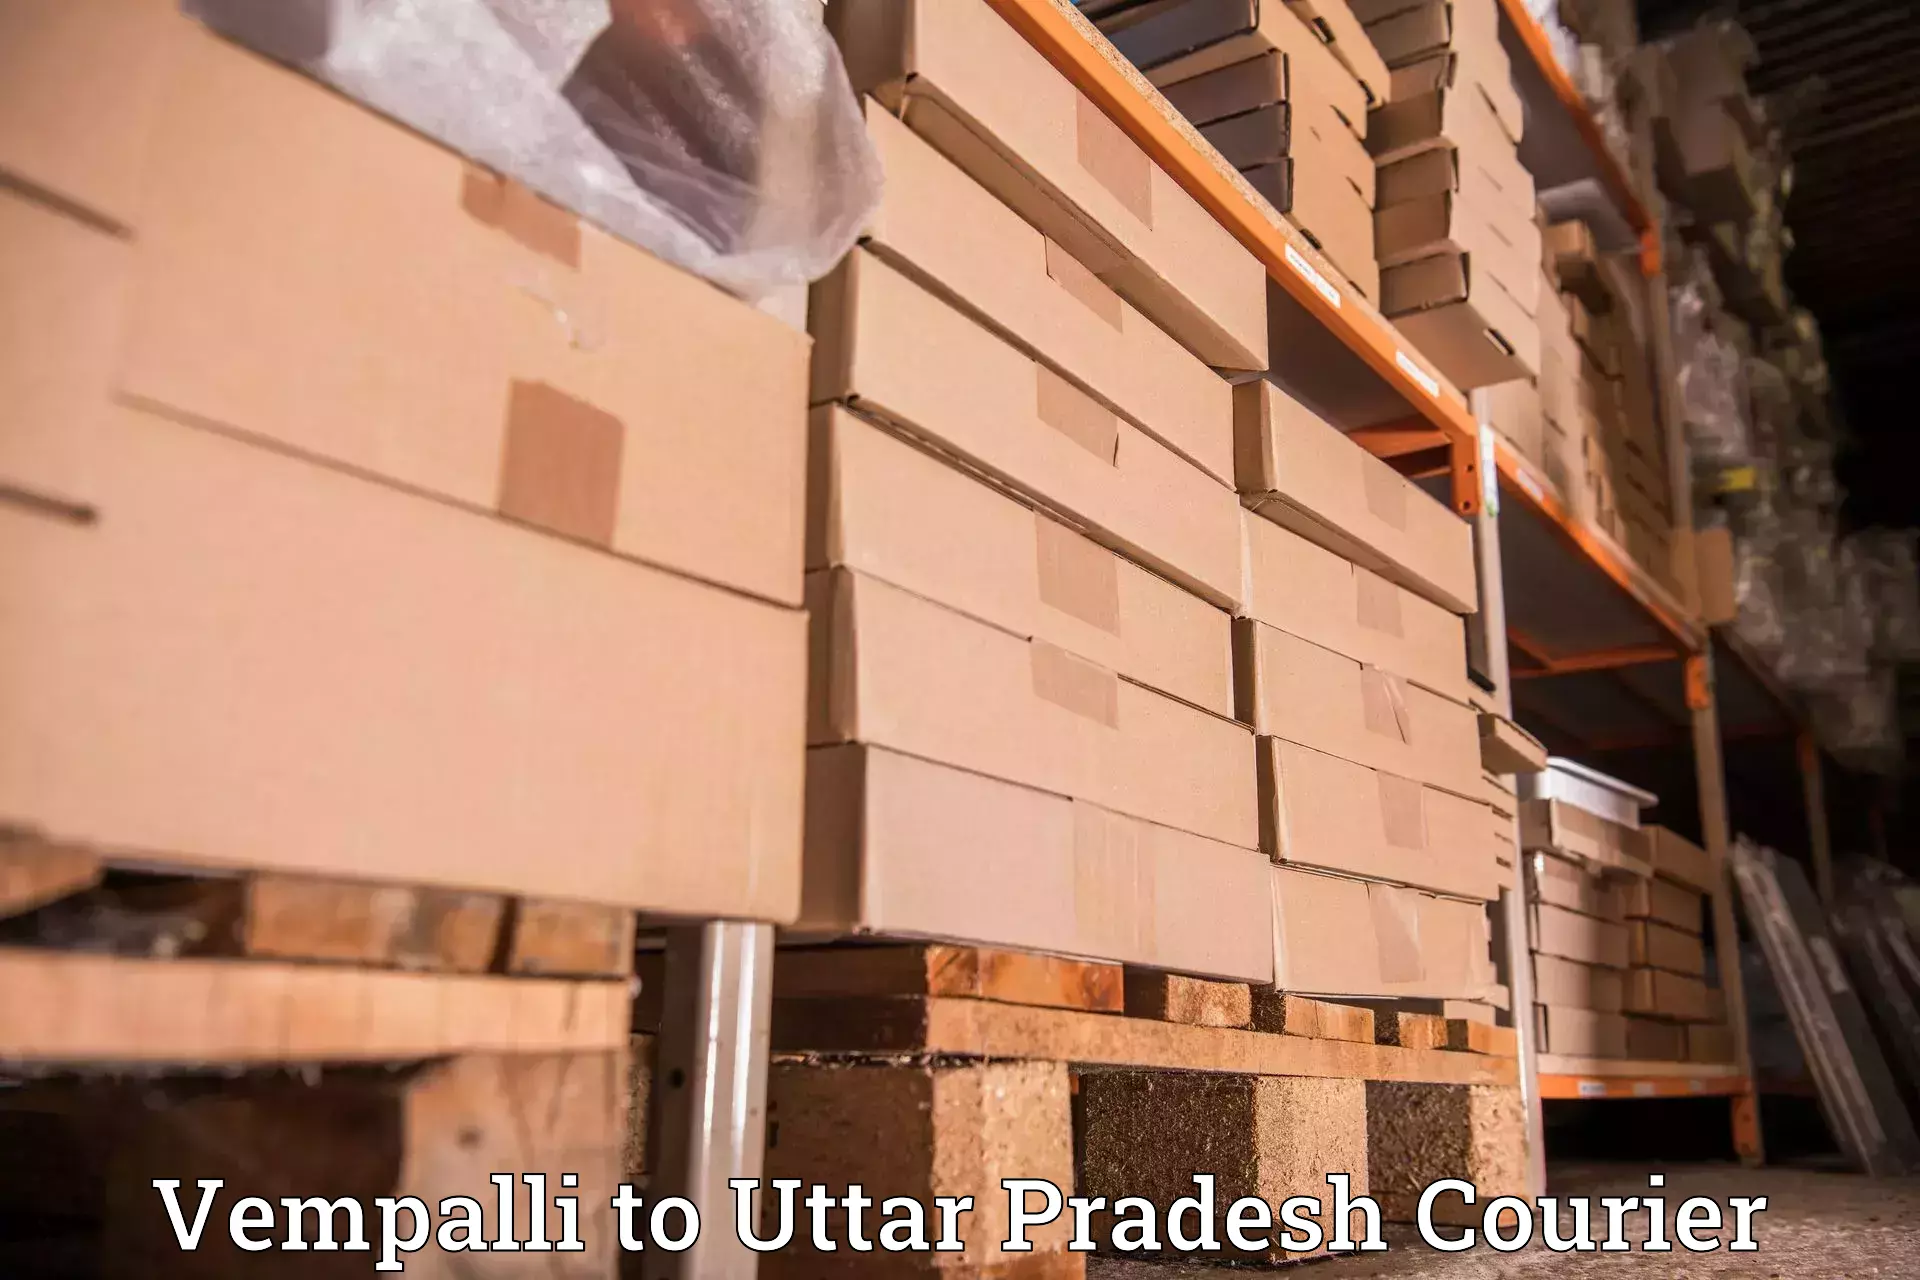 Full-service courier options Vempalli to Katghar Lalganj